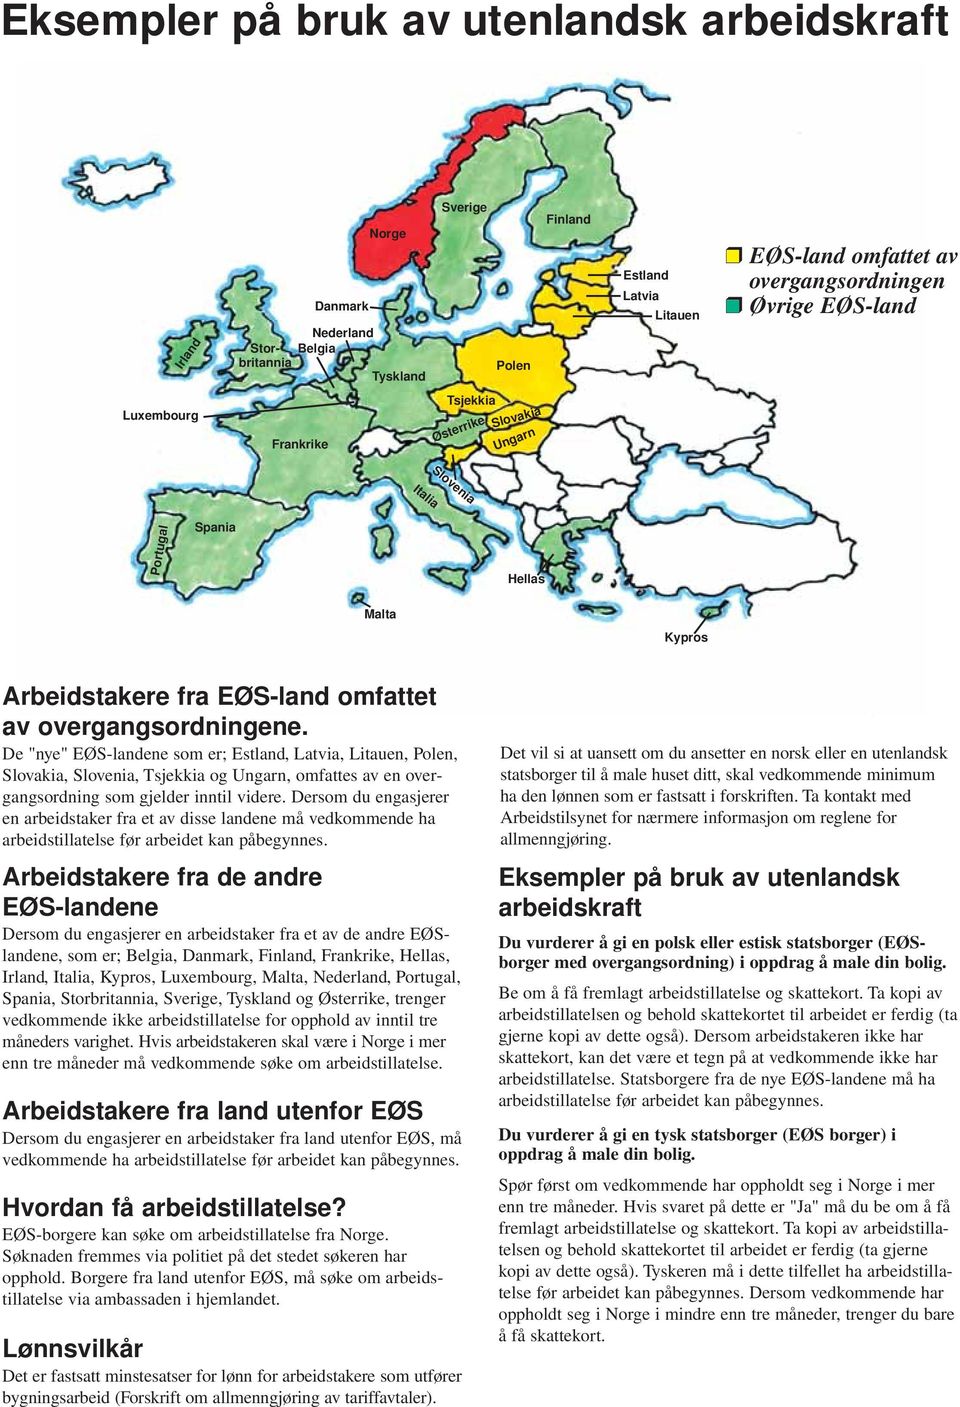 De "nye" EØS-landene som er; Estland, Latvia, Litauen, Polen, Slovakia, Slovenia, Tsjekkia og Ungarn, omfattes av en overgangsordning som gjelder inntil videre.